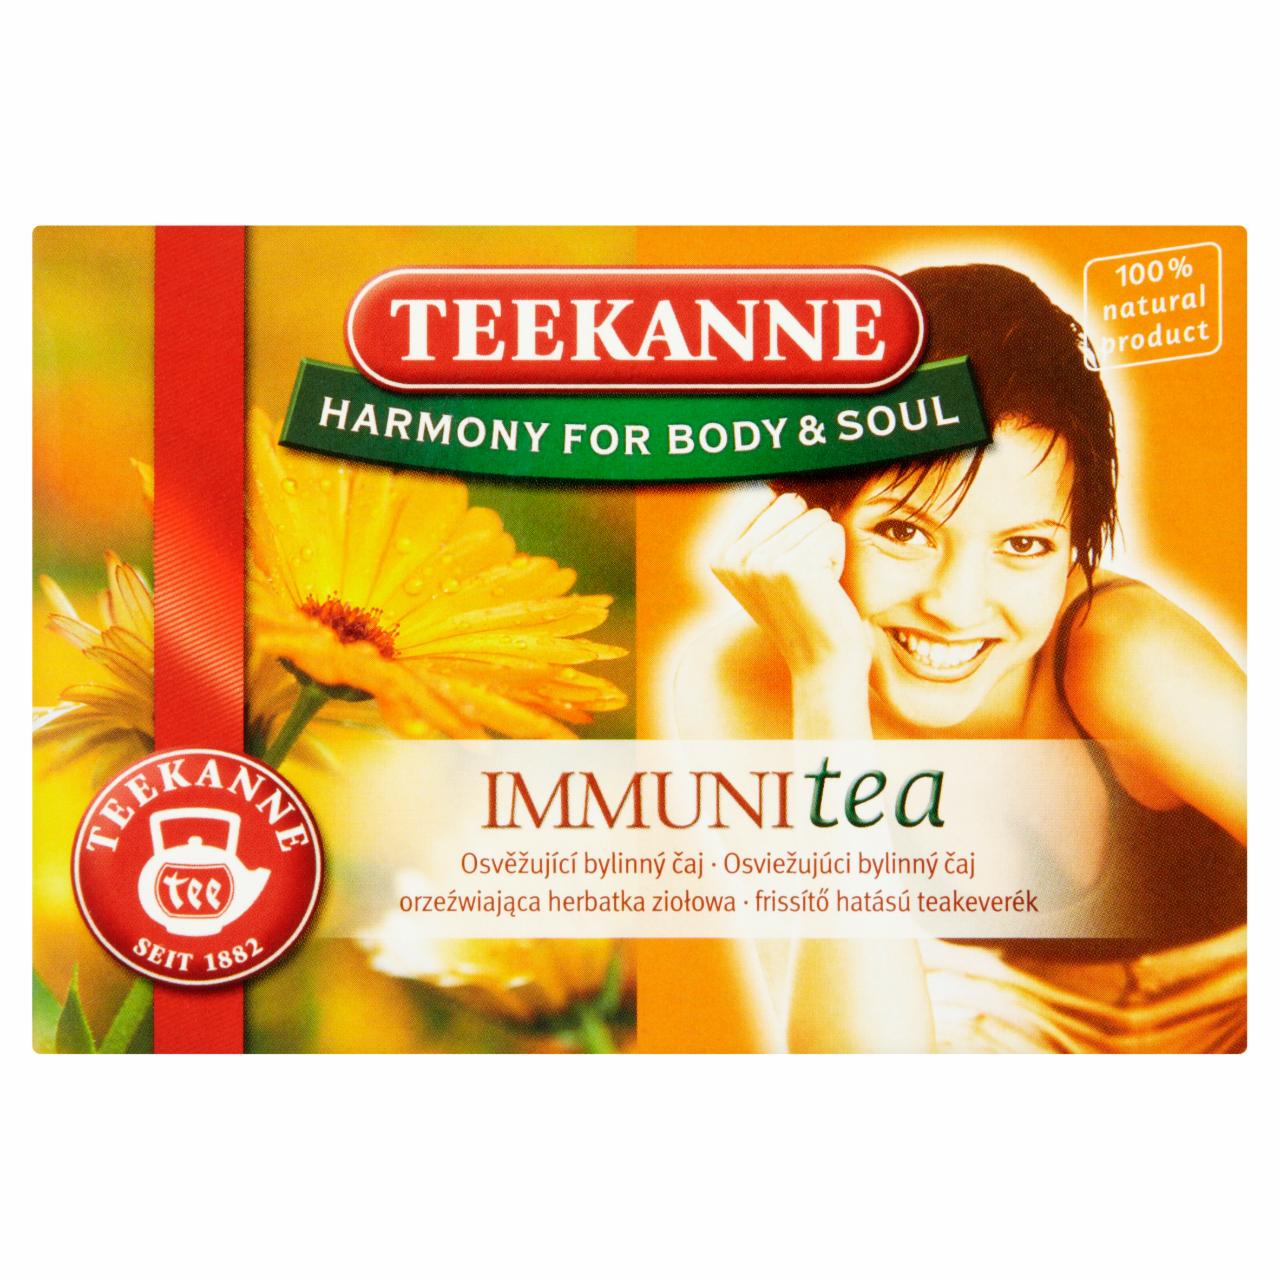 Képek - Teekanne Harmony for Body & Soul Immuni Tea frissítő hatású teakeverék 16 teatasak 32 g